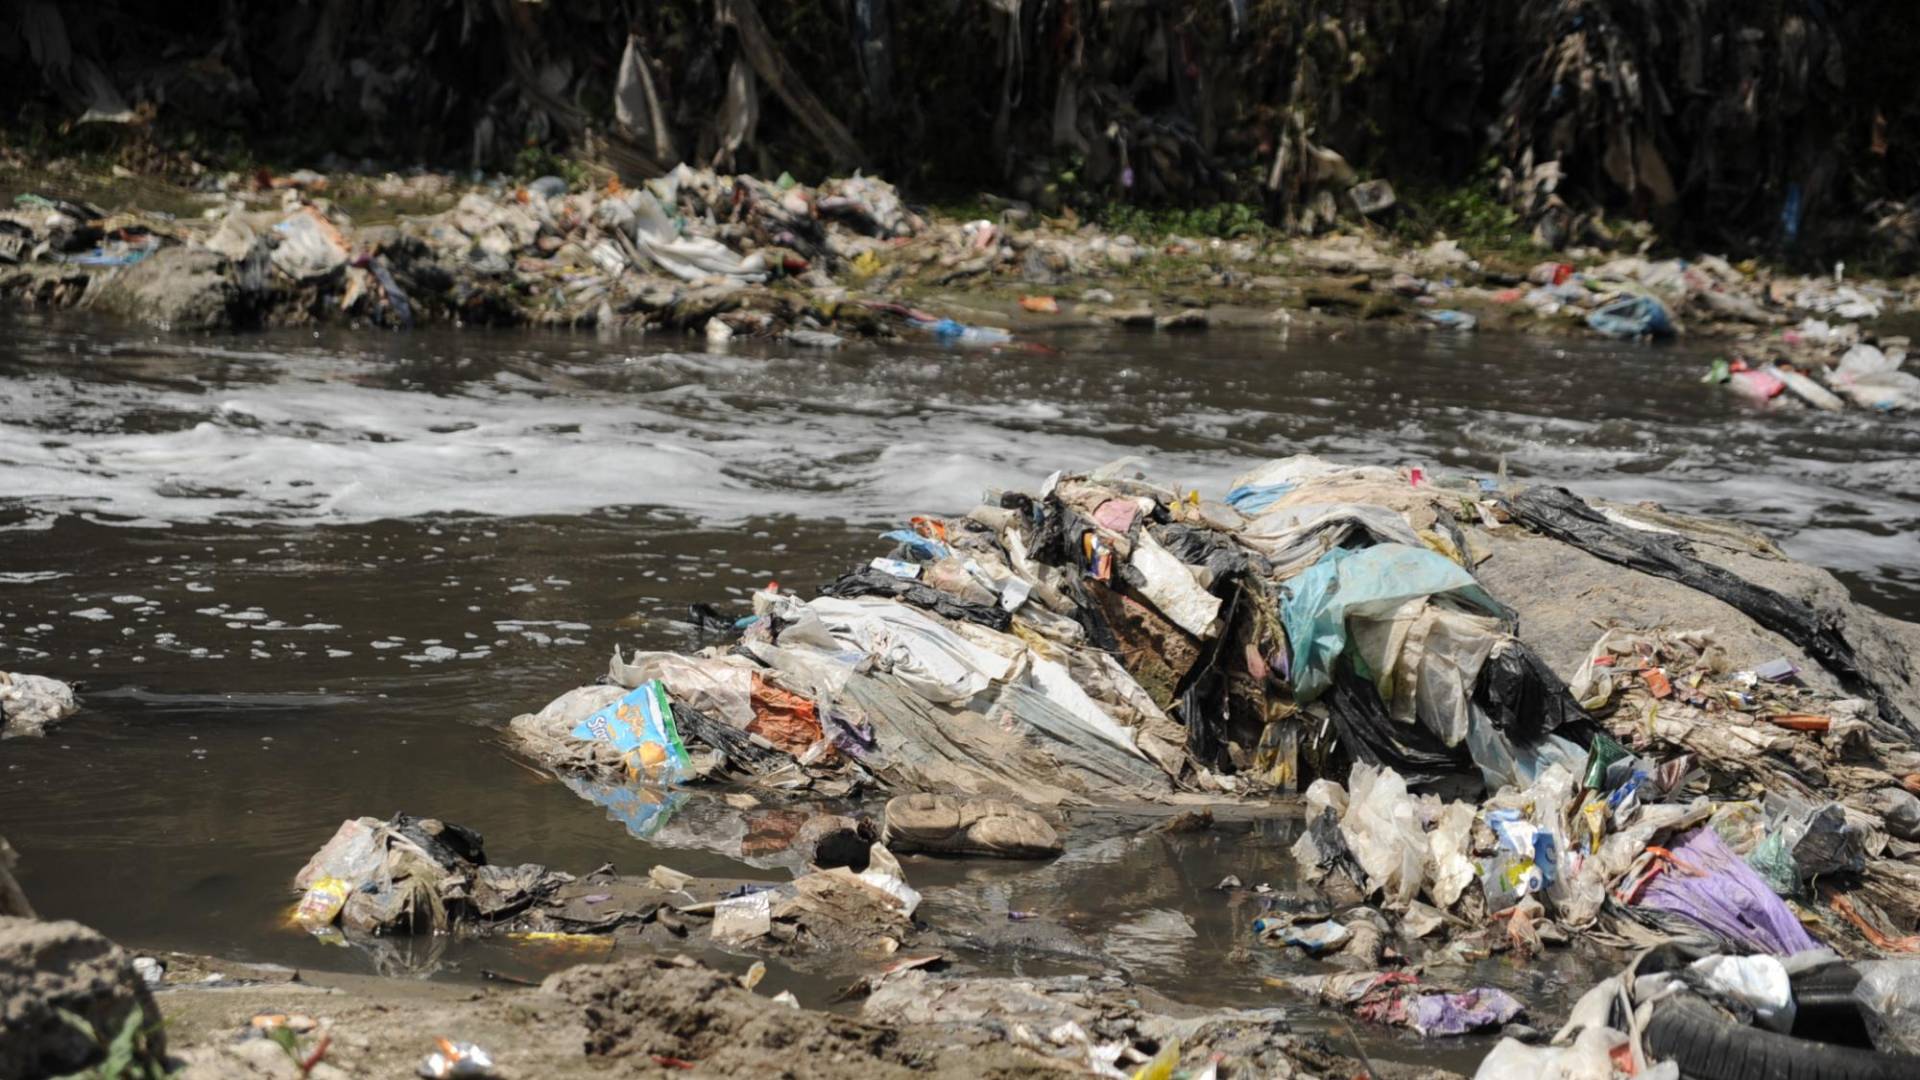 $!En el río Las Vacas, uno de los más contaminados del mundo, se instalará una biobarda, según autoridades hondureñas. Por este río pasan 8,500 toneladas de basura.